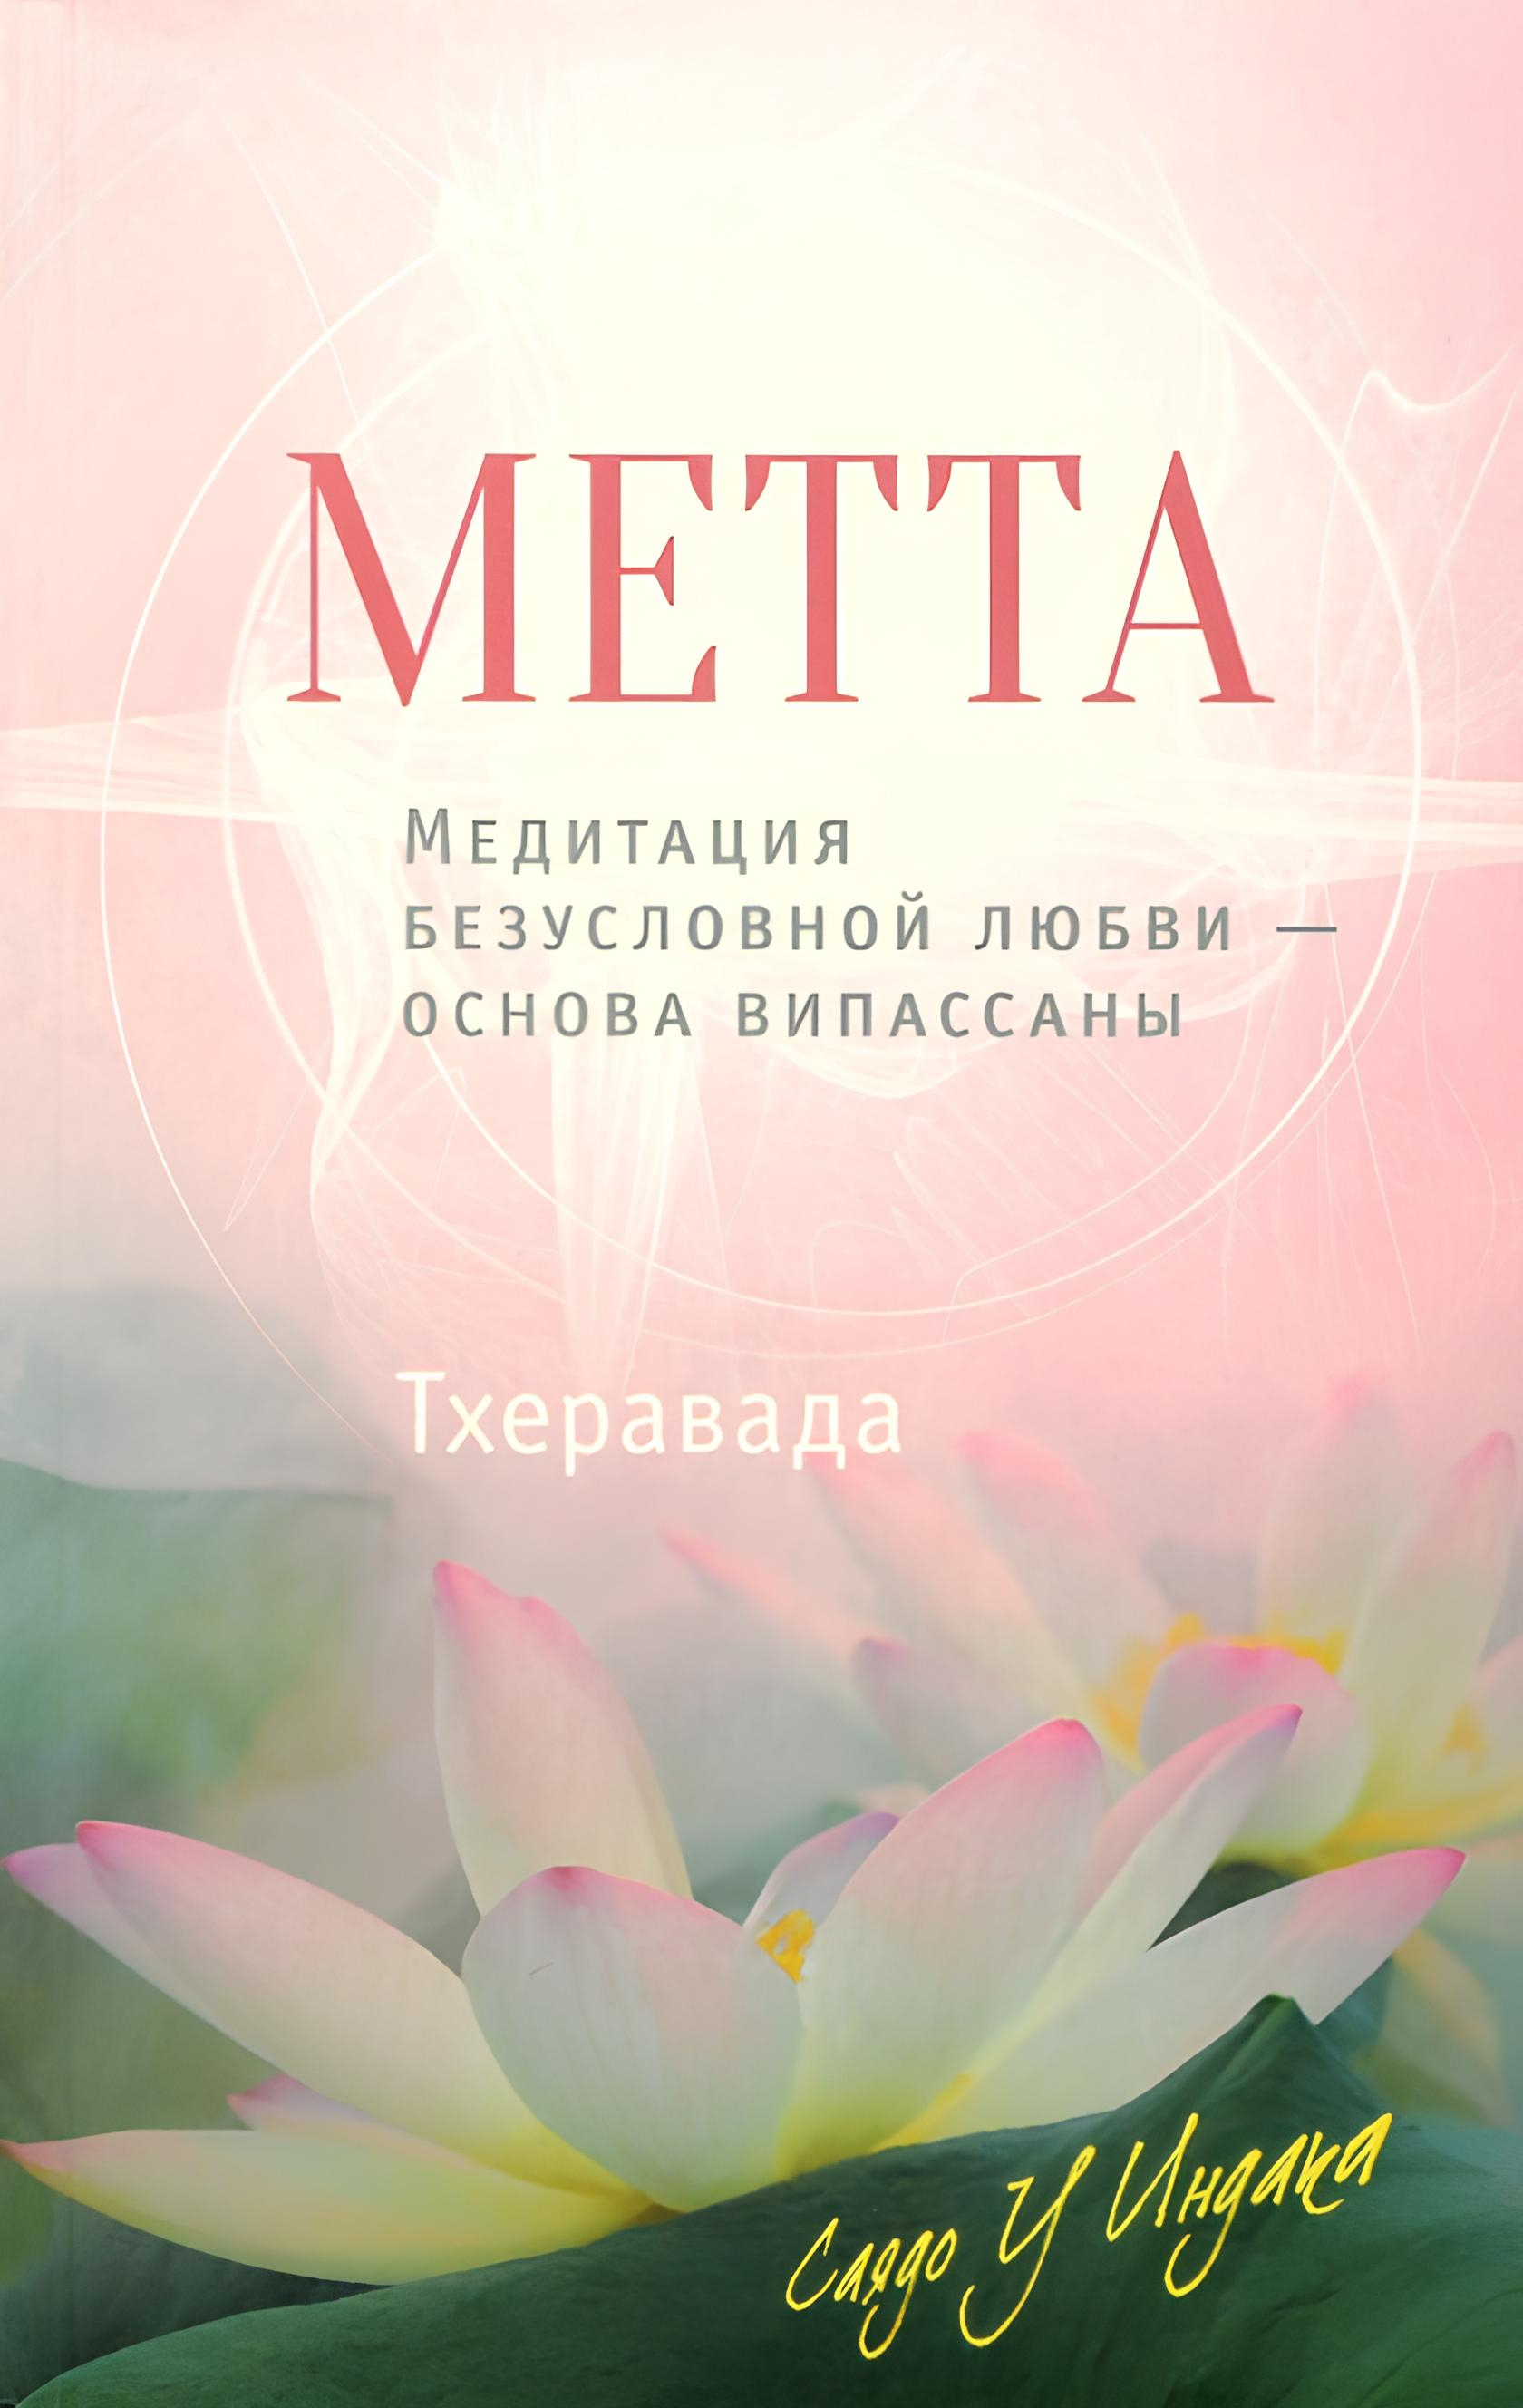 Метта. Медитация безусловной любви - основа випассаны